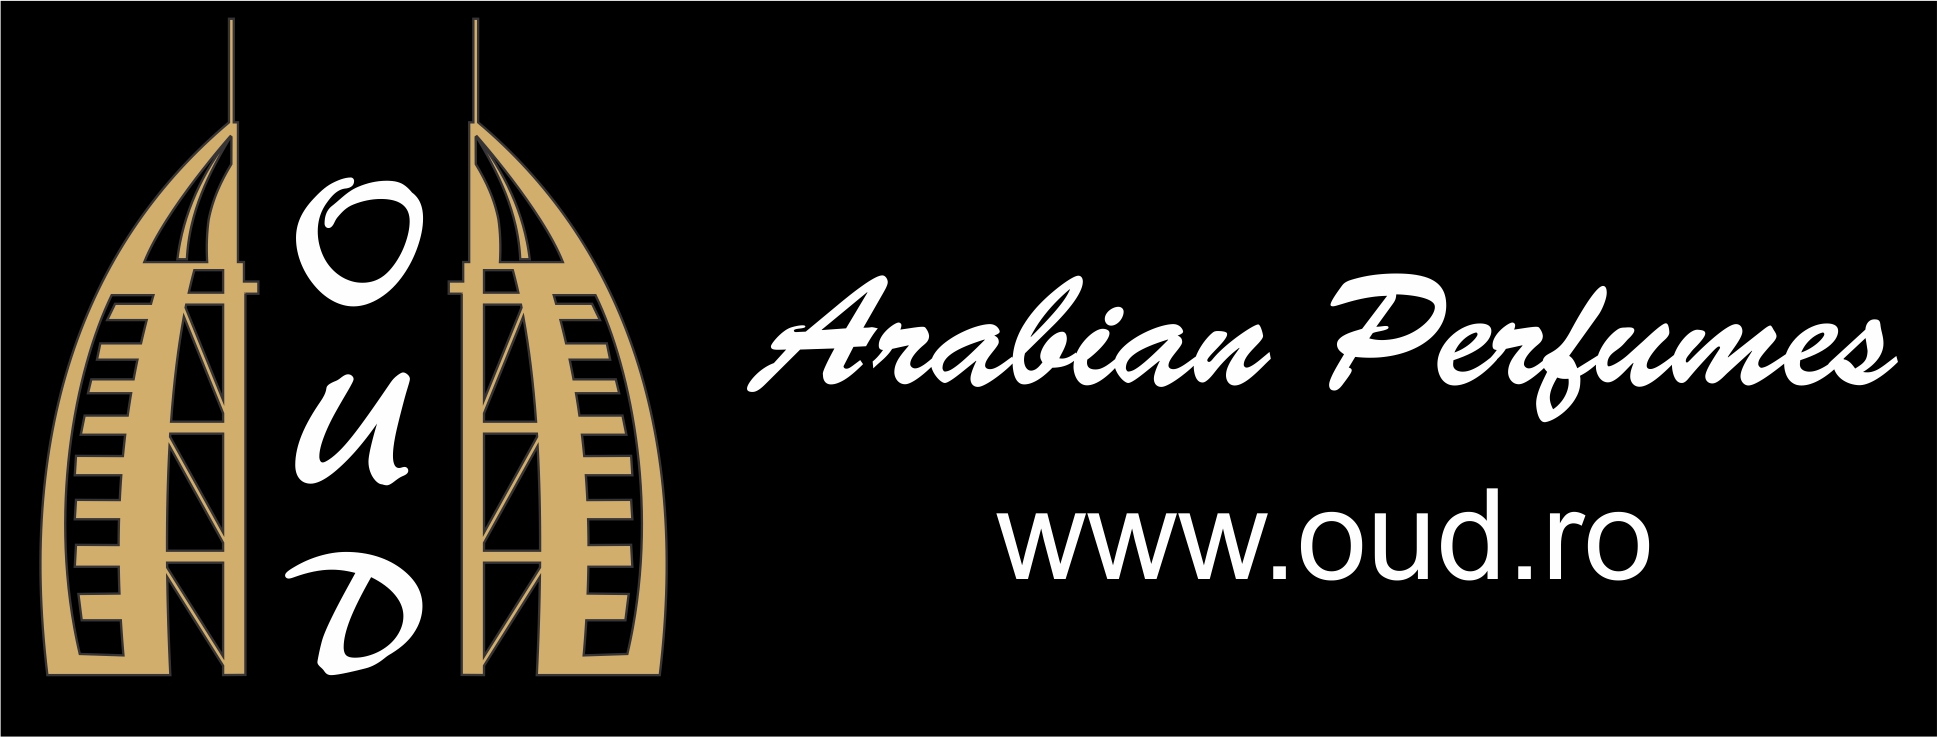 Oud Arabian Perfumes